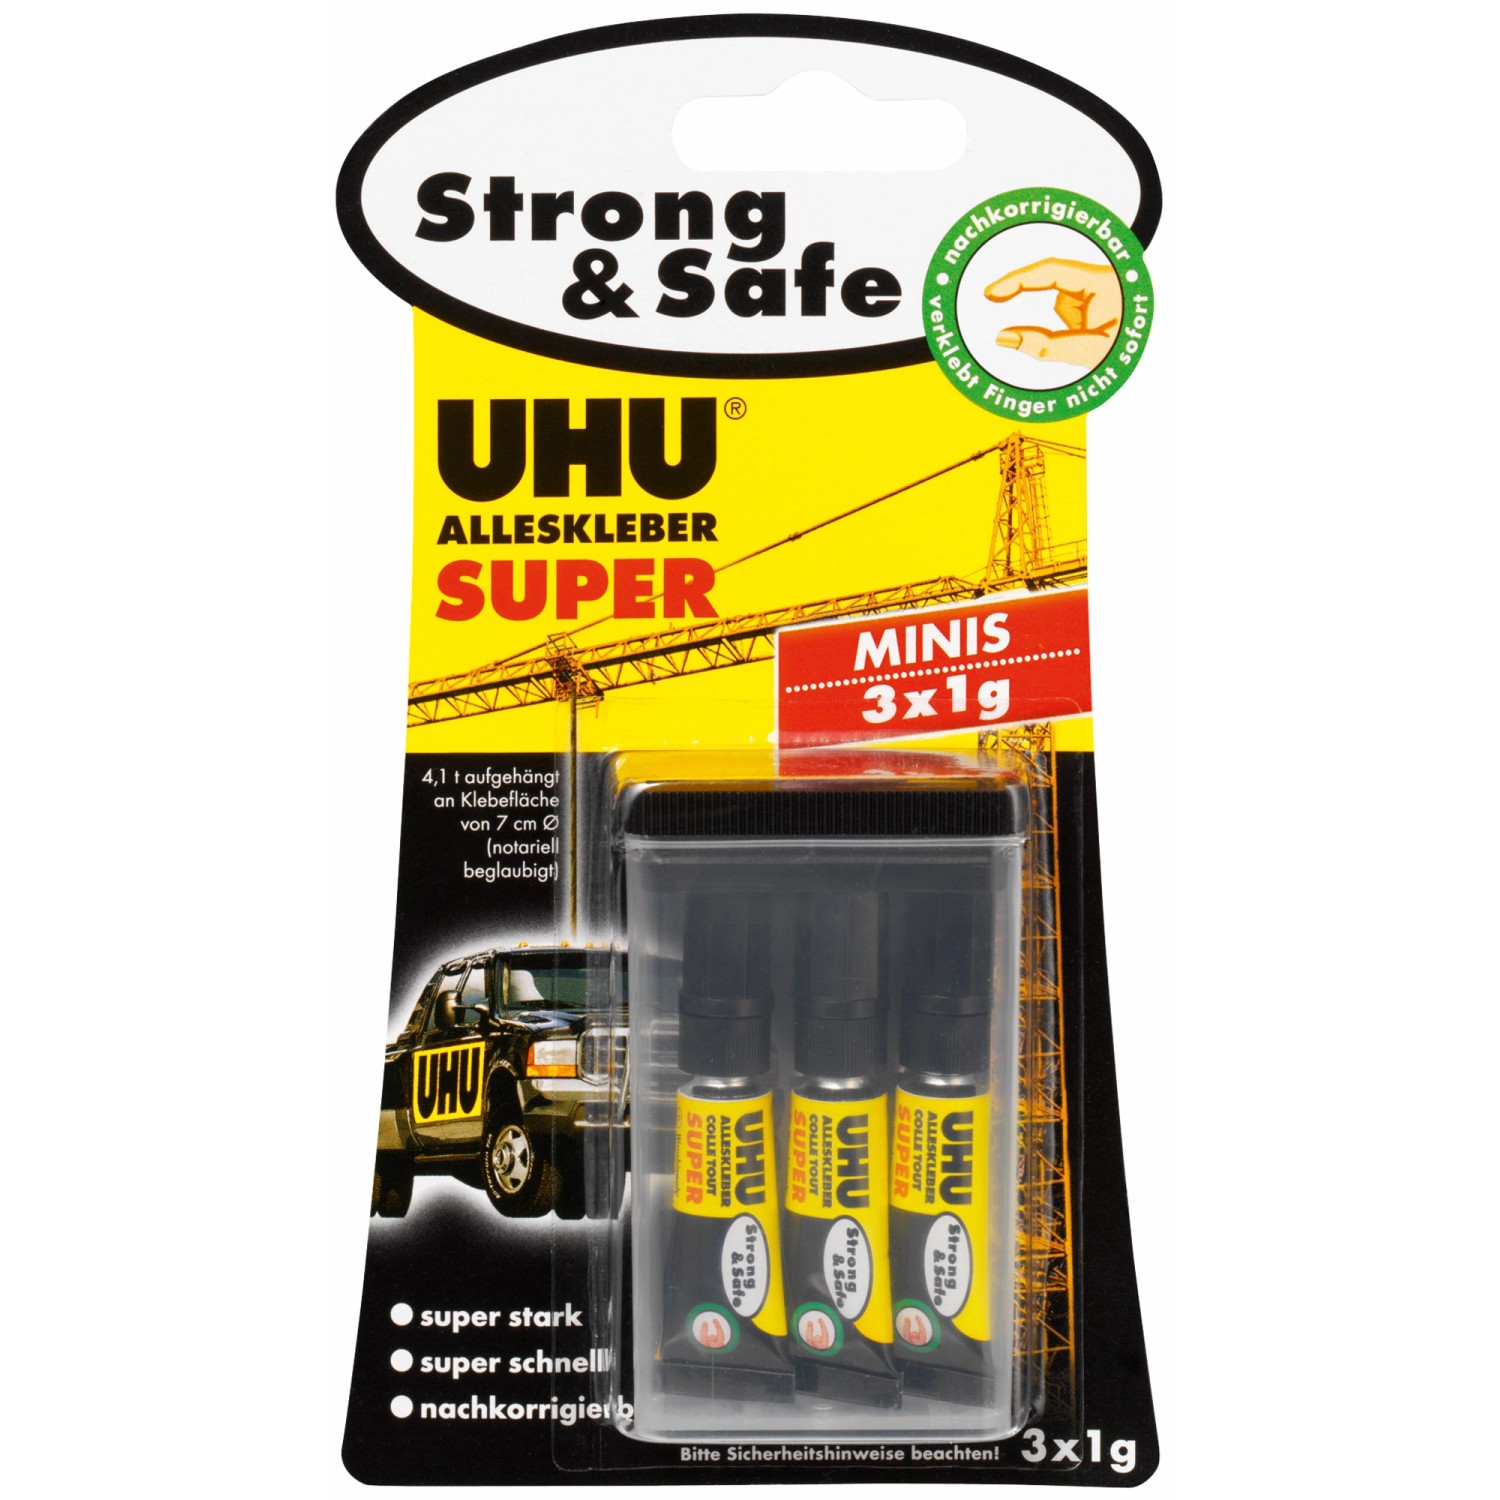 Uhu Alleskleber Super Strong & Safe 3 x 1 g minis